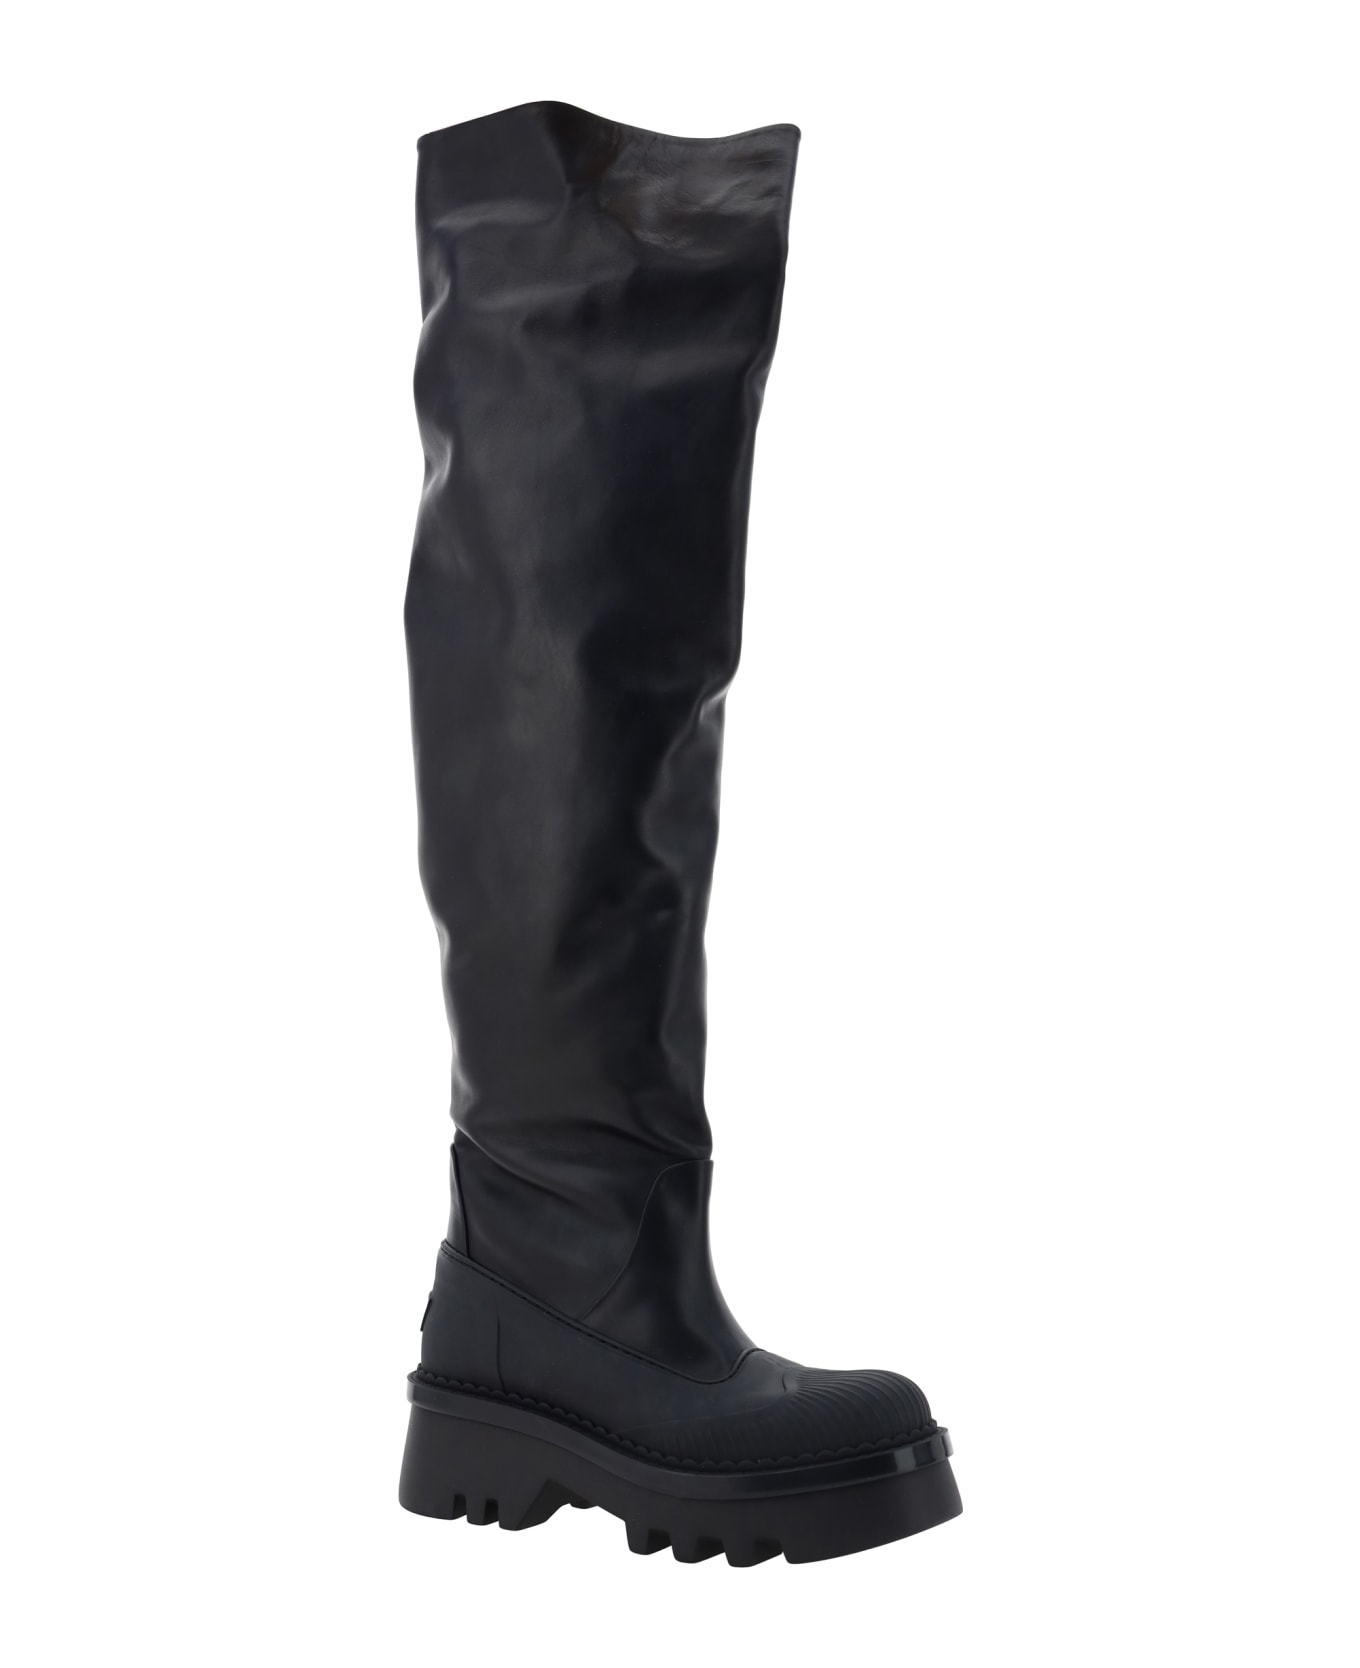 Chloé Chloè Raina Over Knee Boots - Black ブーツ